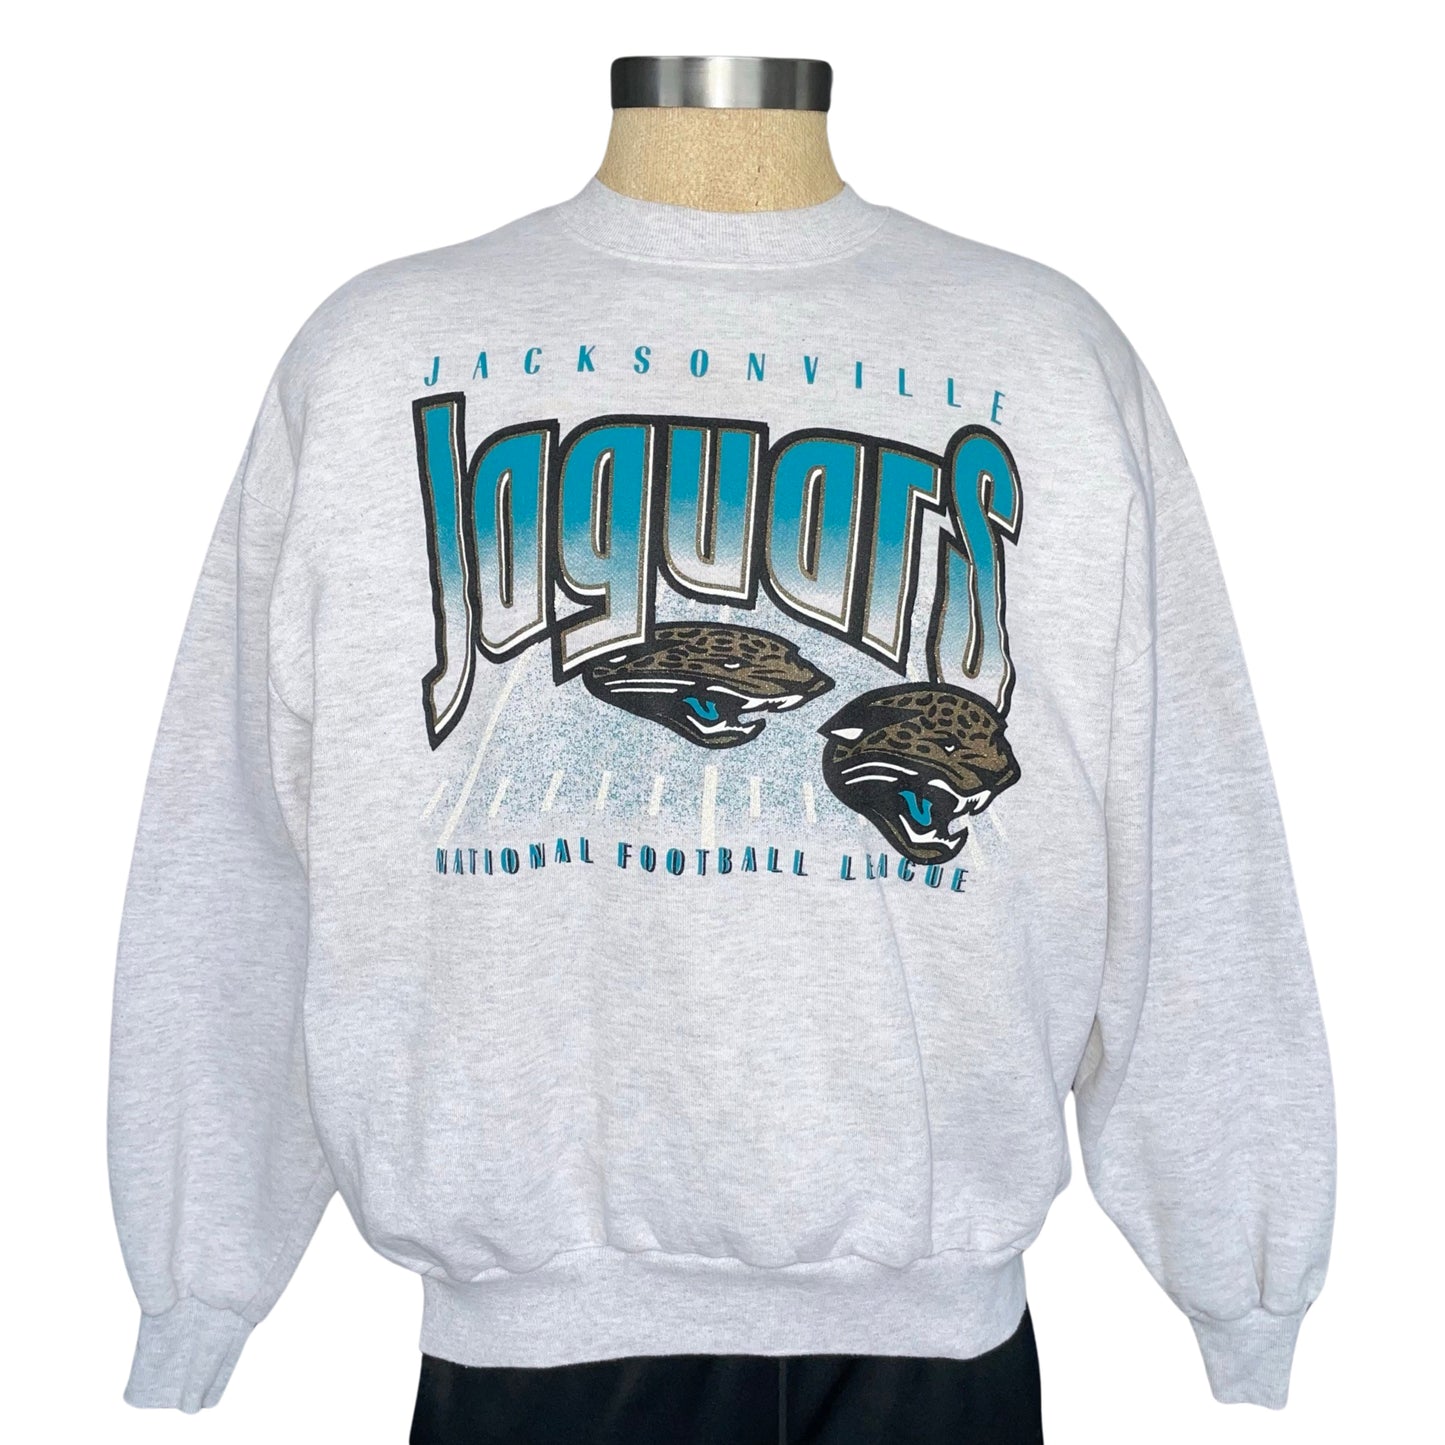 Vintage Jacksonville Jaguars sweatshirt size LARGE